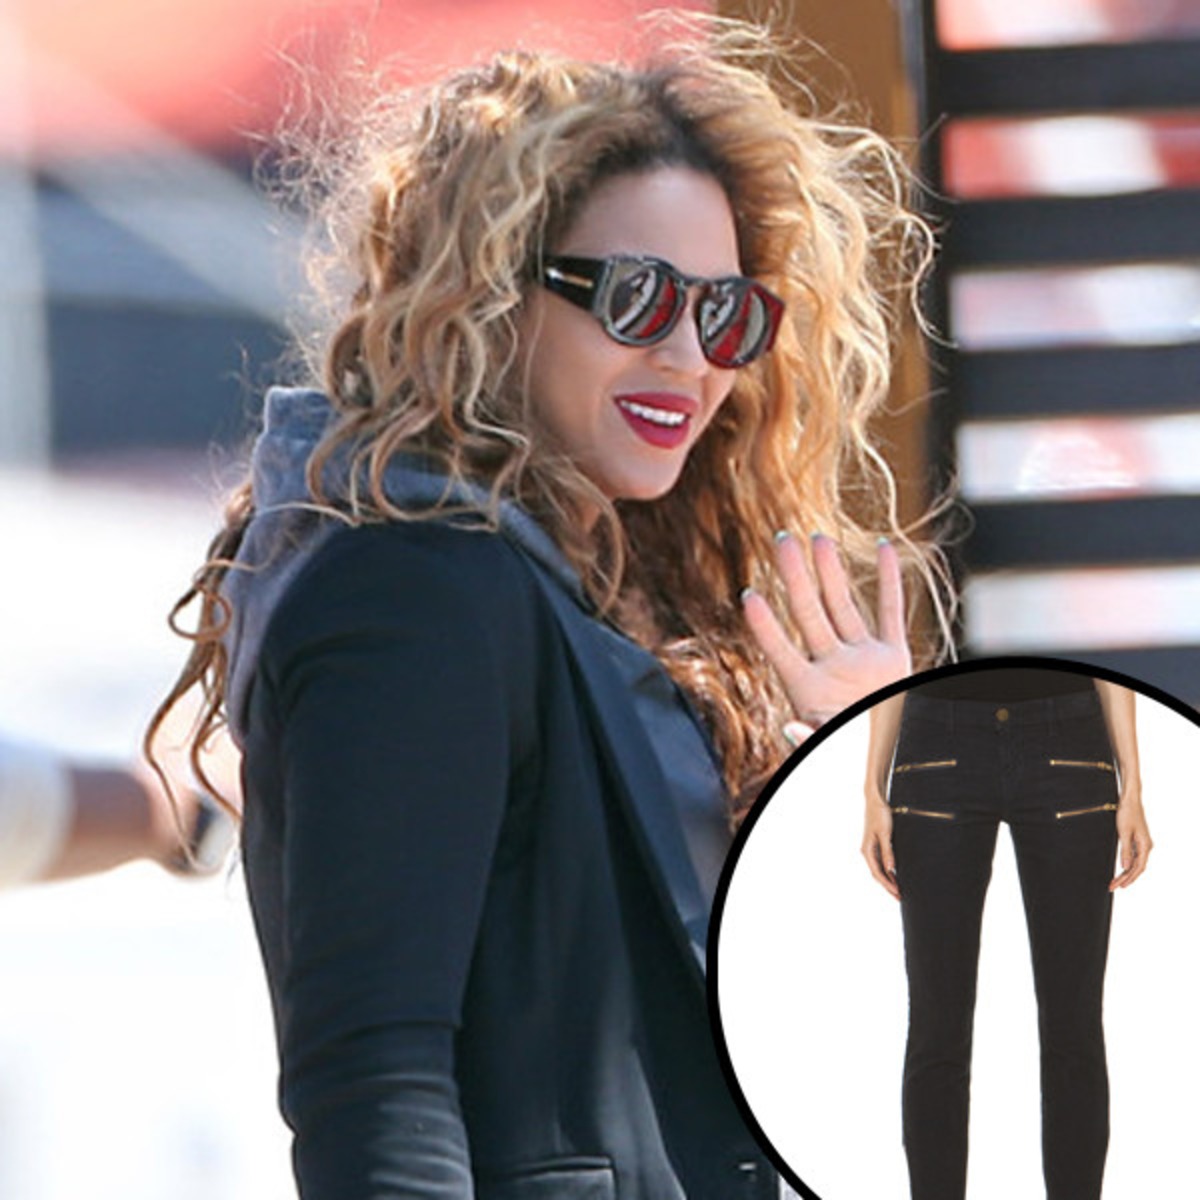 Cosas que deseamos: ¡Los pantalones de Beyoncé! Online Latino - MX